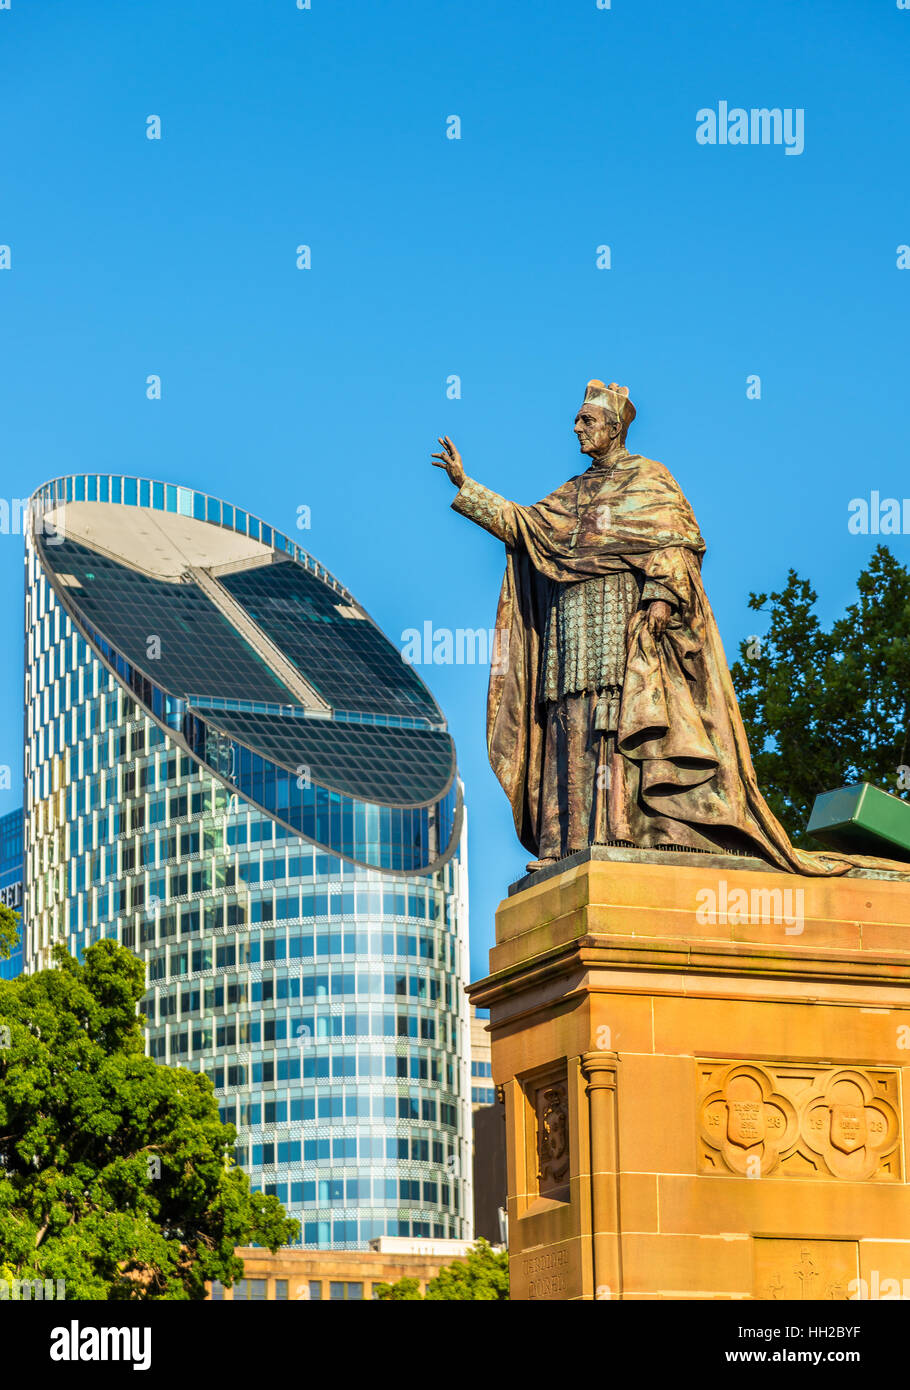 Statue à la cathédrale St Mary de Sydney - Australie Banque D'Images